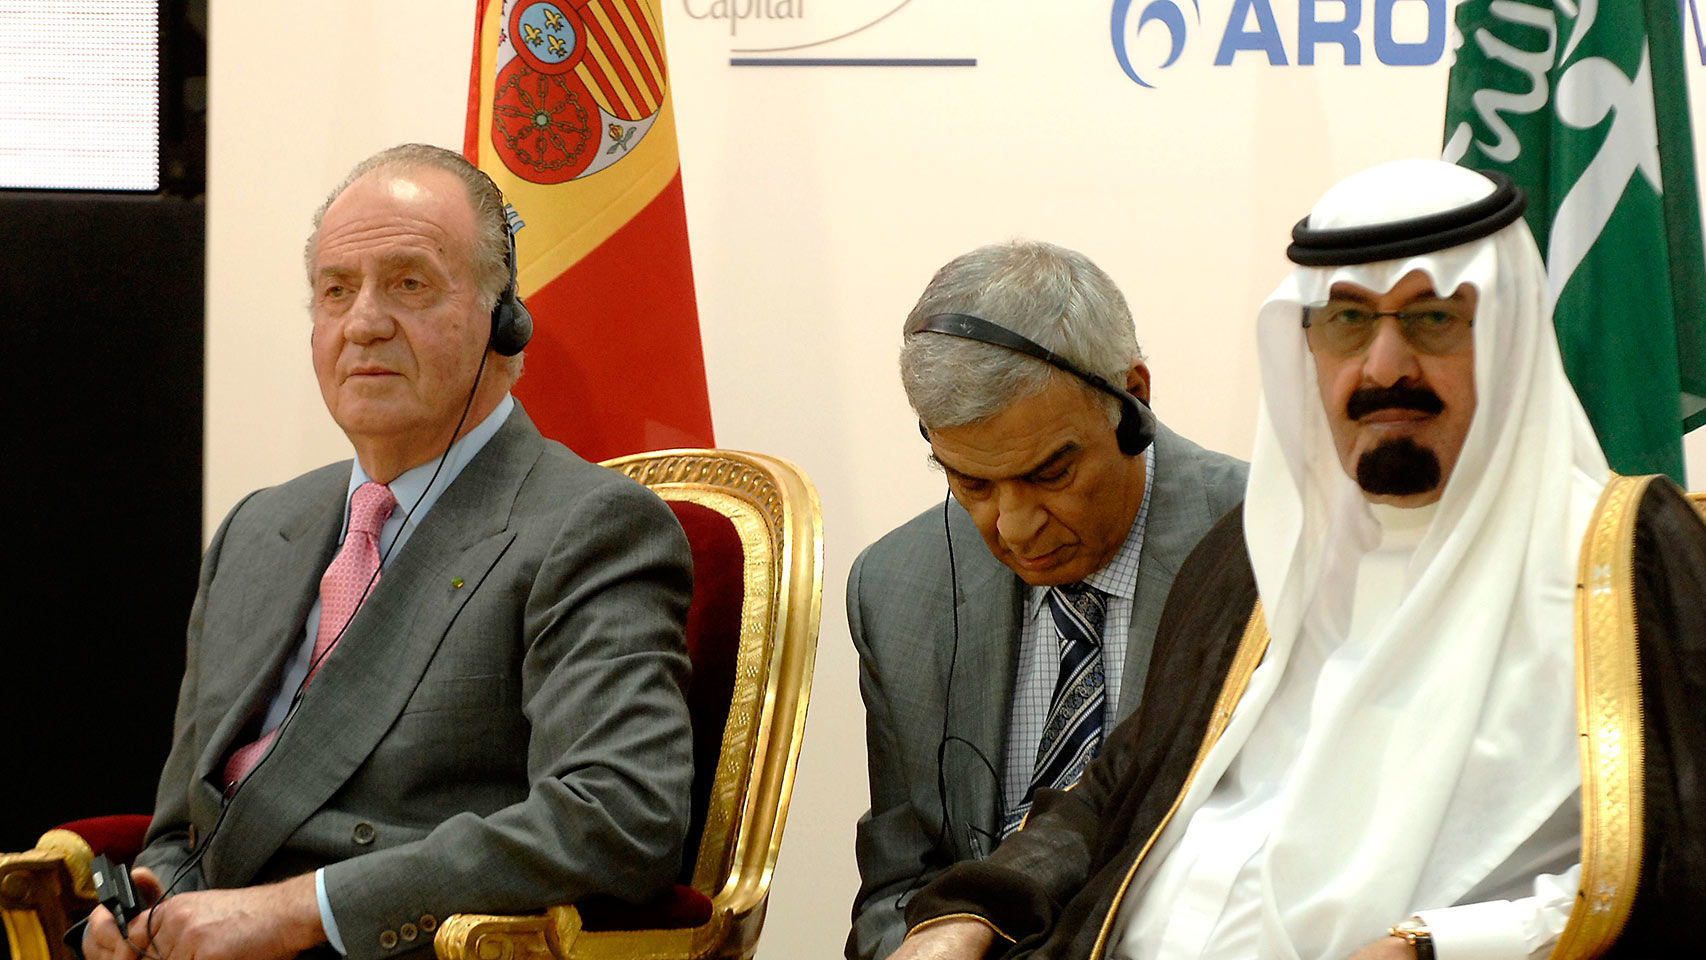 Fotografía de junio de 2007, del rey Juan Carlos y el rey de Arabia Saudí, Abdallah Bin Abdulaziz, durante la presentación del Fondo Hispano-Saudí de Infraestructuras. EFE